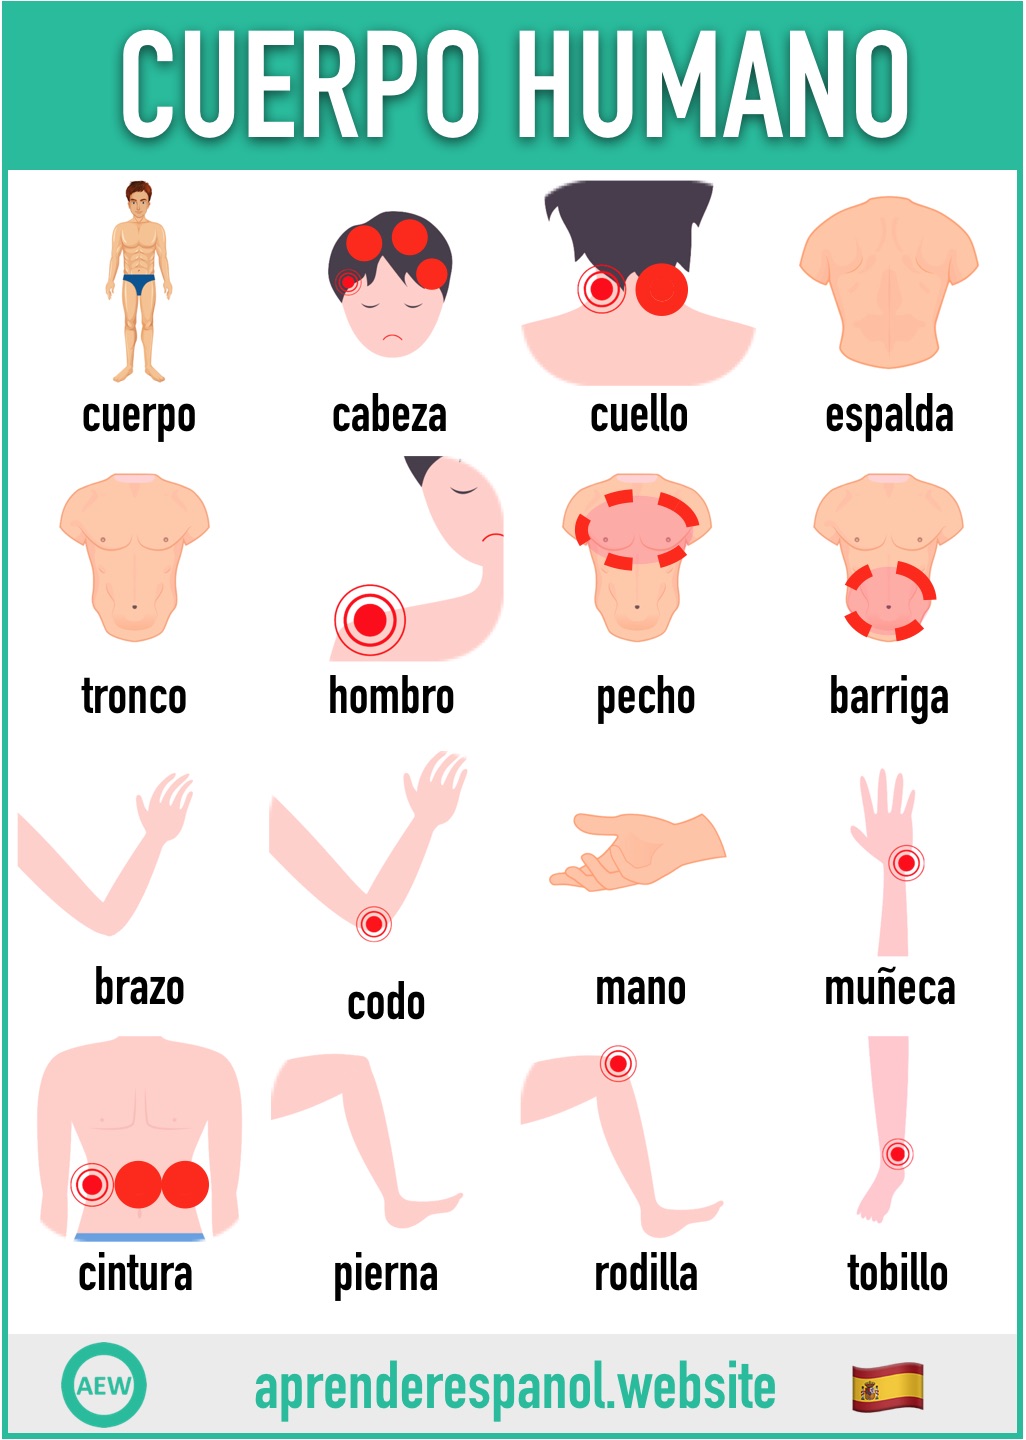 cuerpo humano en español - vocabulario del cuerpo humano en español - aprender español website